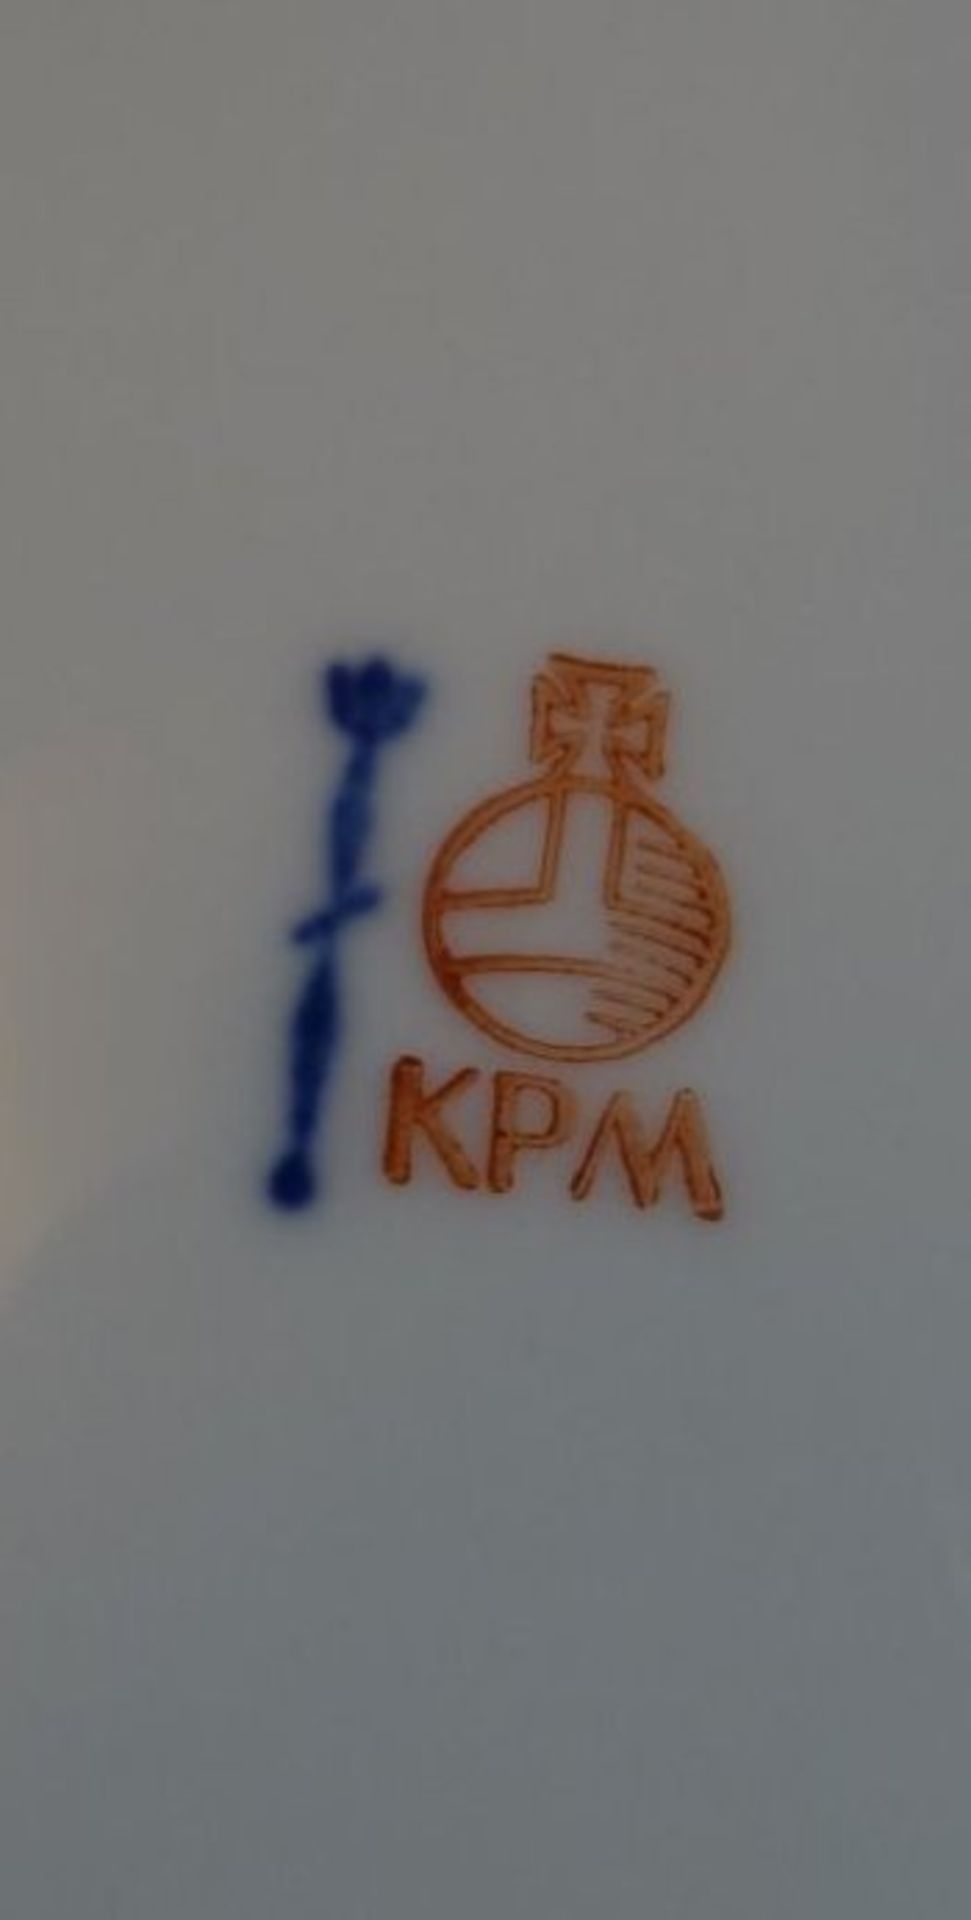 ovale Schale "KPM" Berlin, Blumendekor und Goldrand, 26x18 cm - Bild 4 aus 4